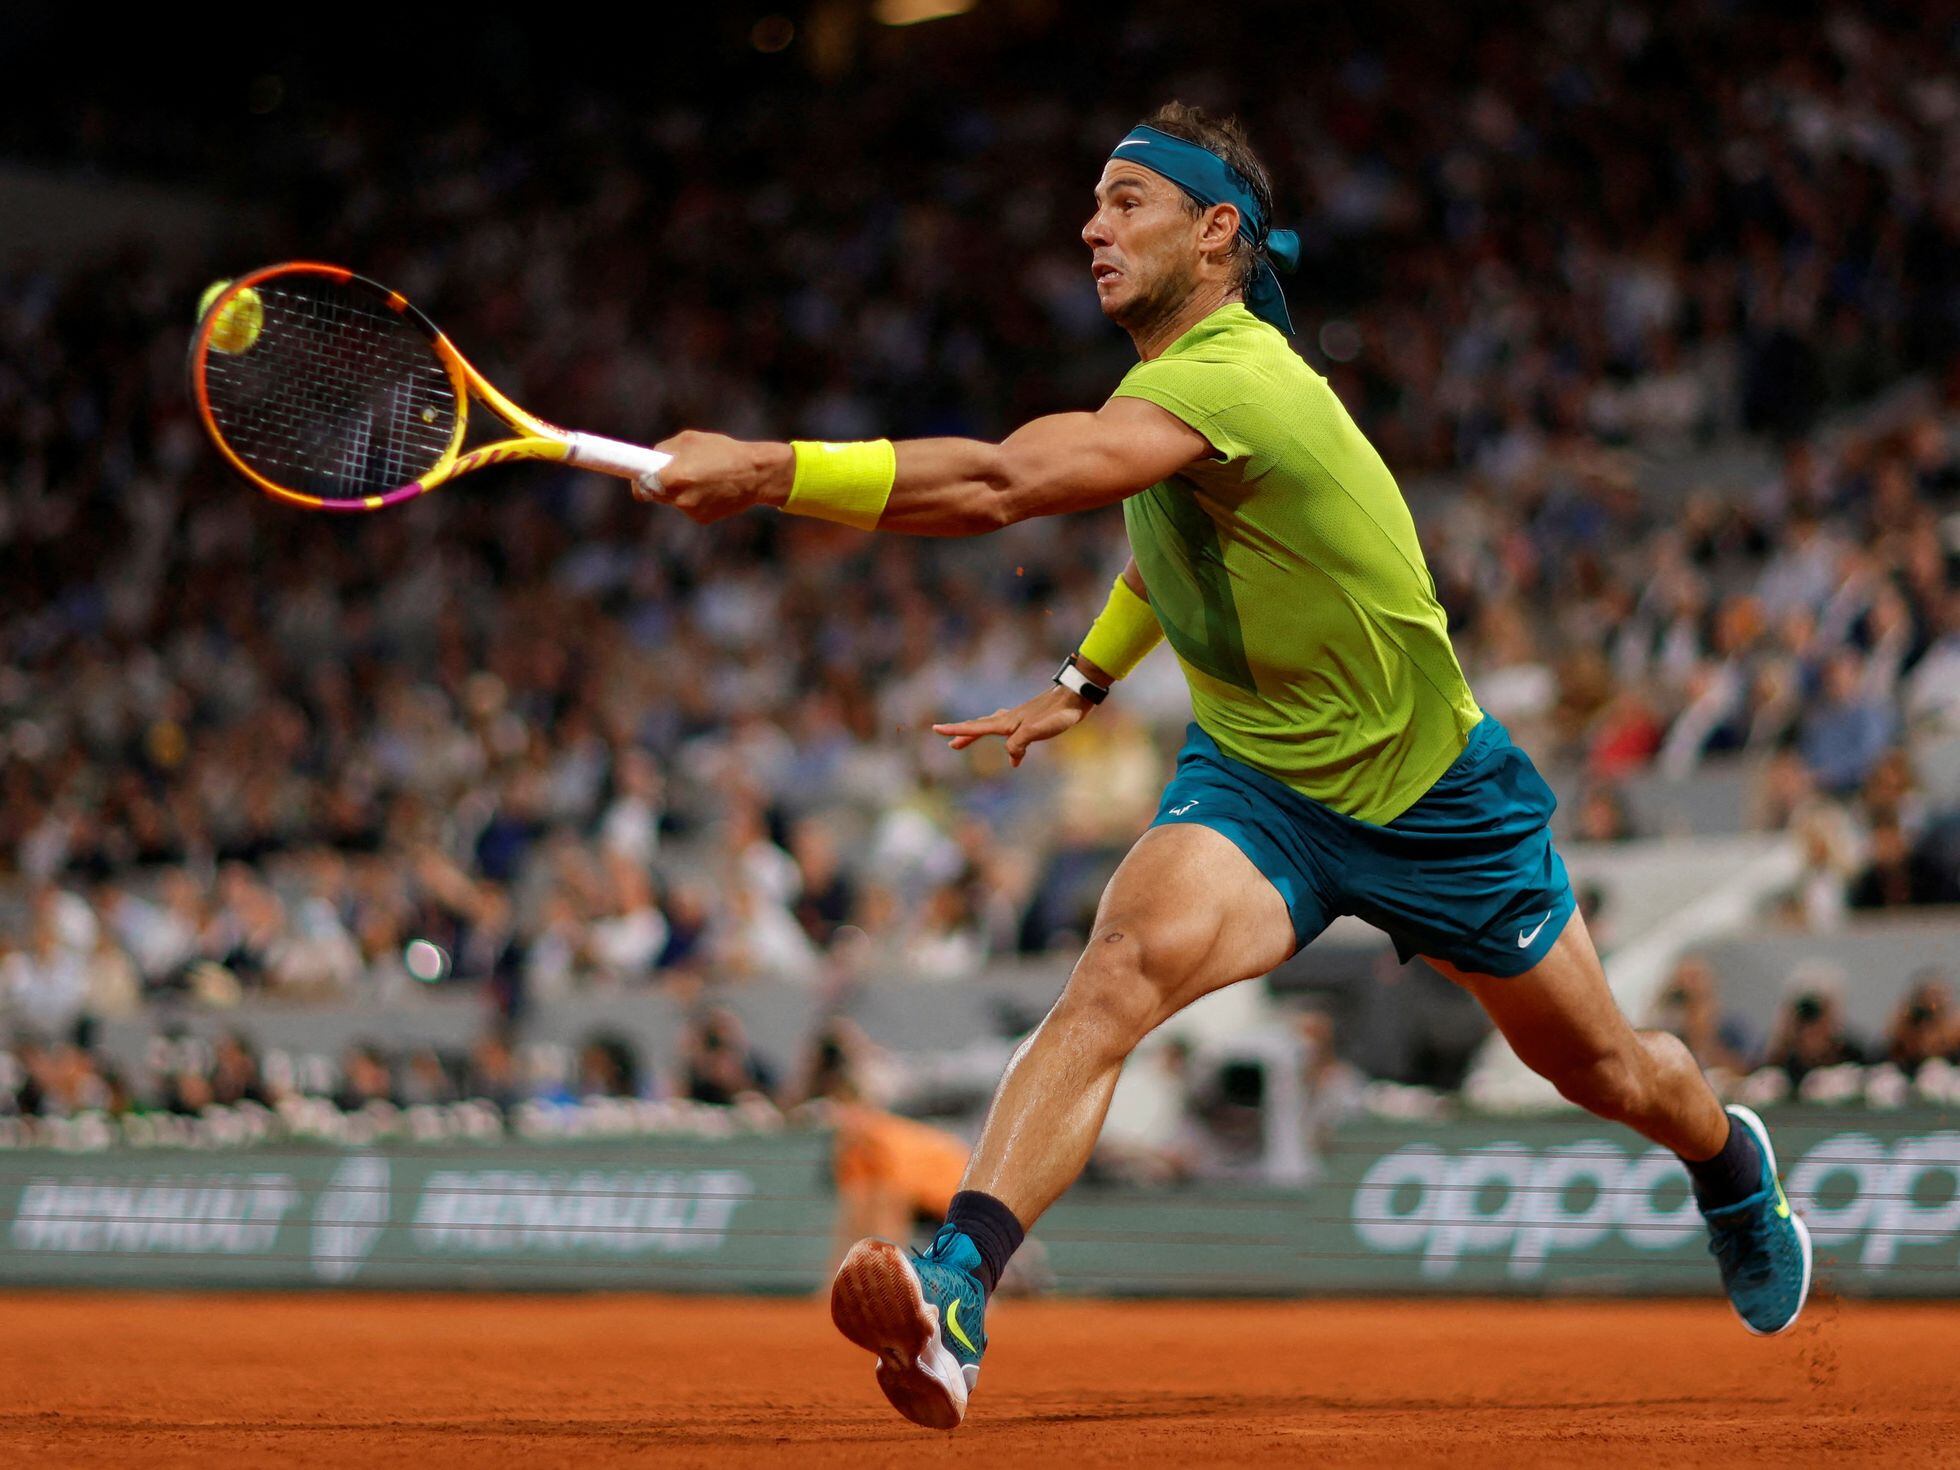 Torbellino poco bancarrota Roland Garros 2022: La lección de vida de Nadal | Deportes | EL PAÍS